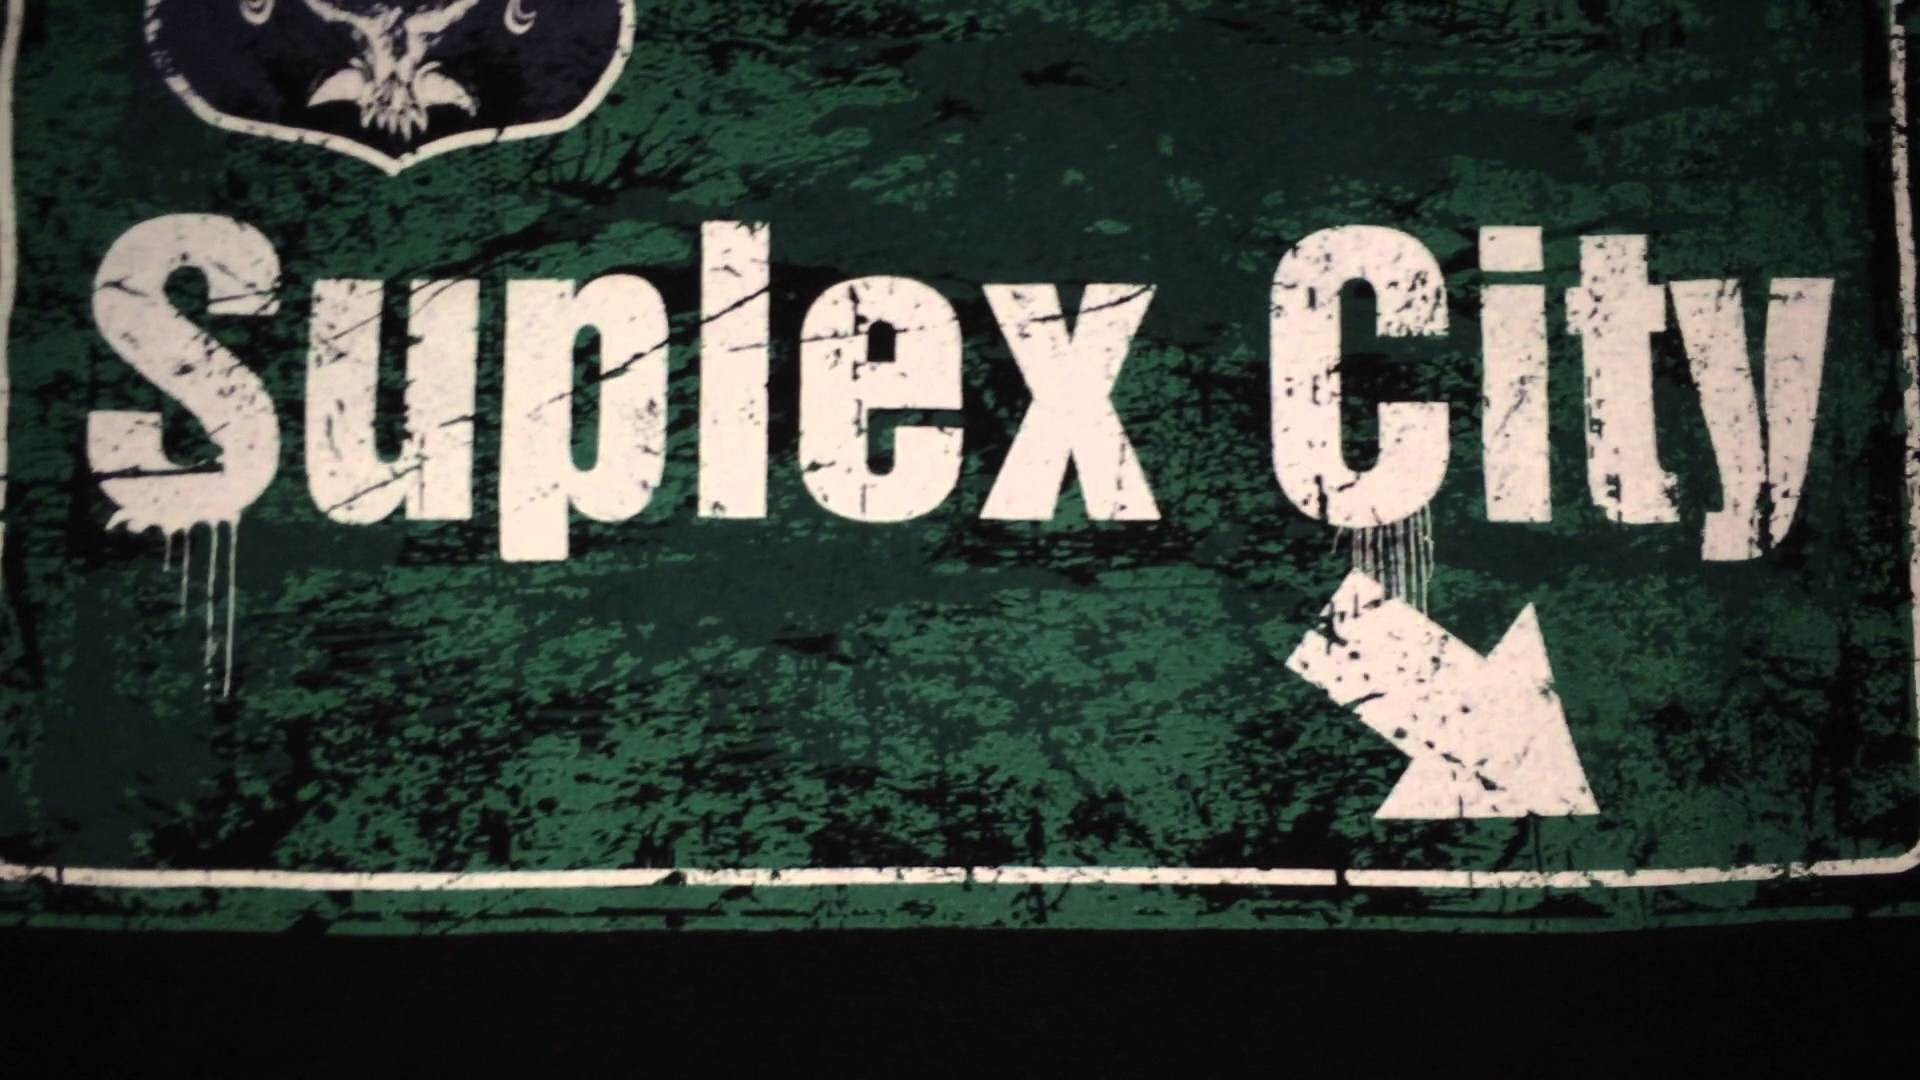 1920x1080 Brock Lesnar Suplex City Logo Pics